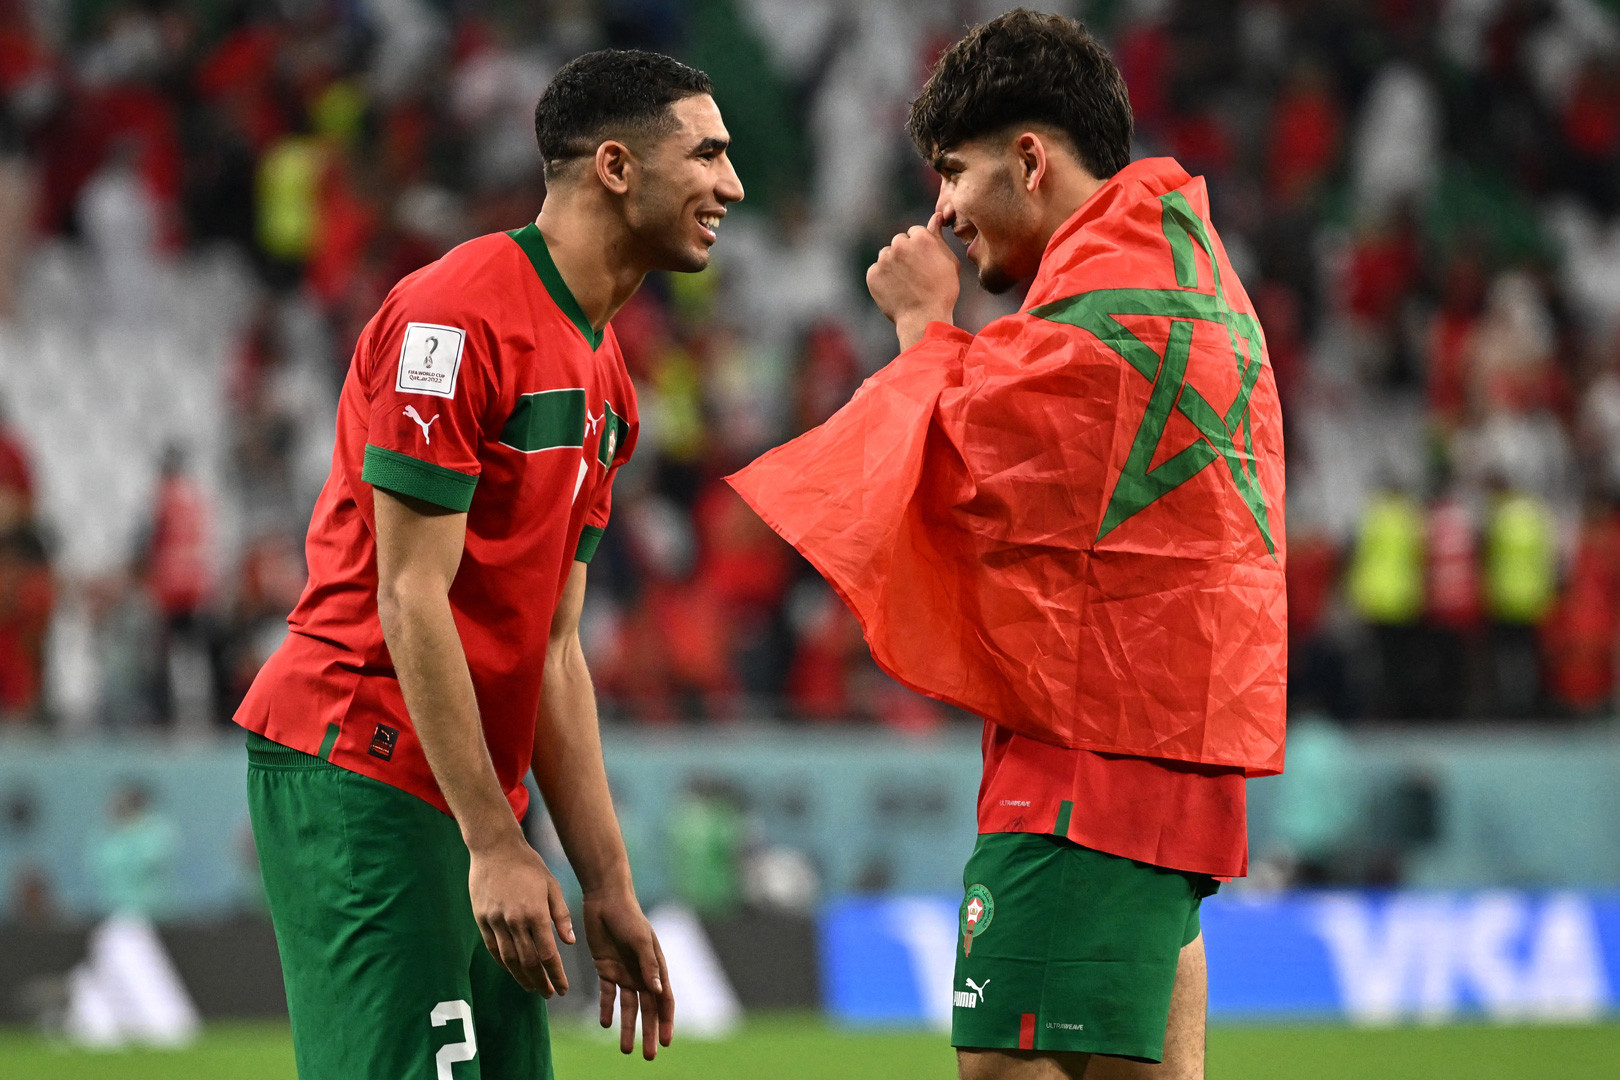 Chuyên gia dự đoán World Cup 2022 Croatia vs Maroc: Bất ngờ - Bóng Đá